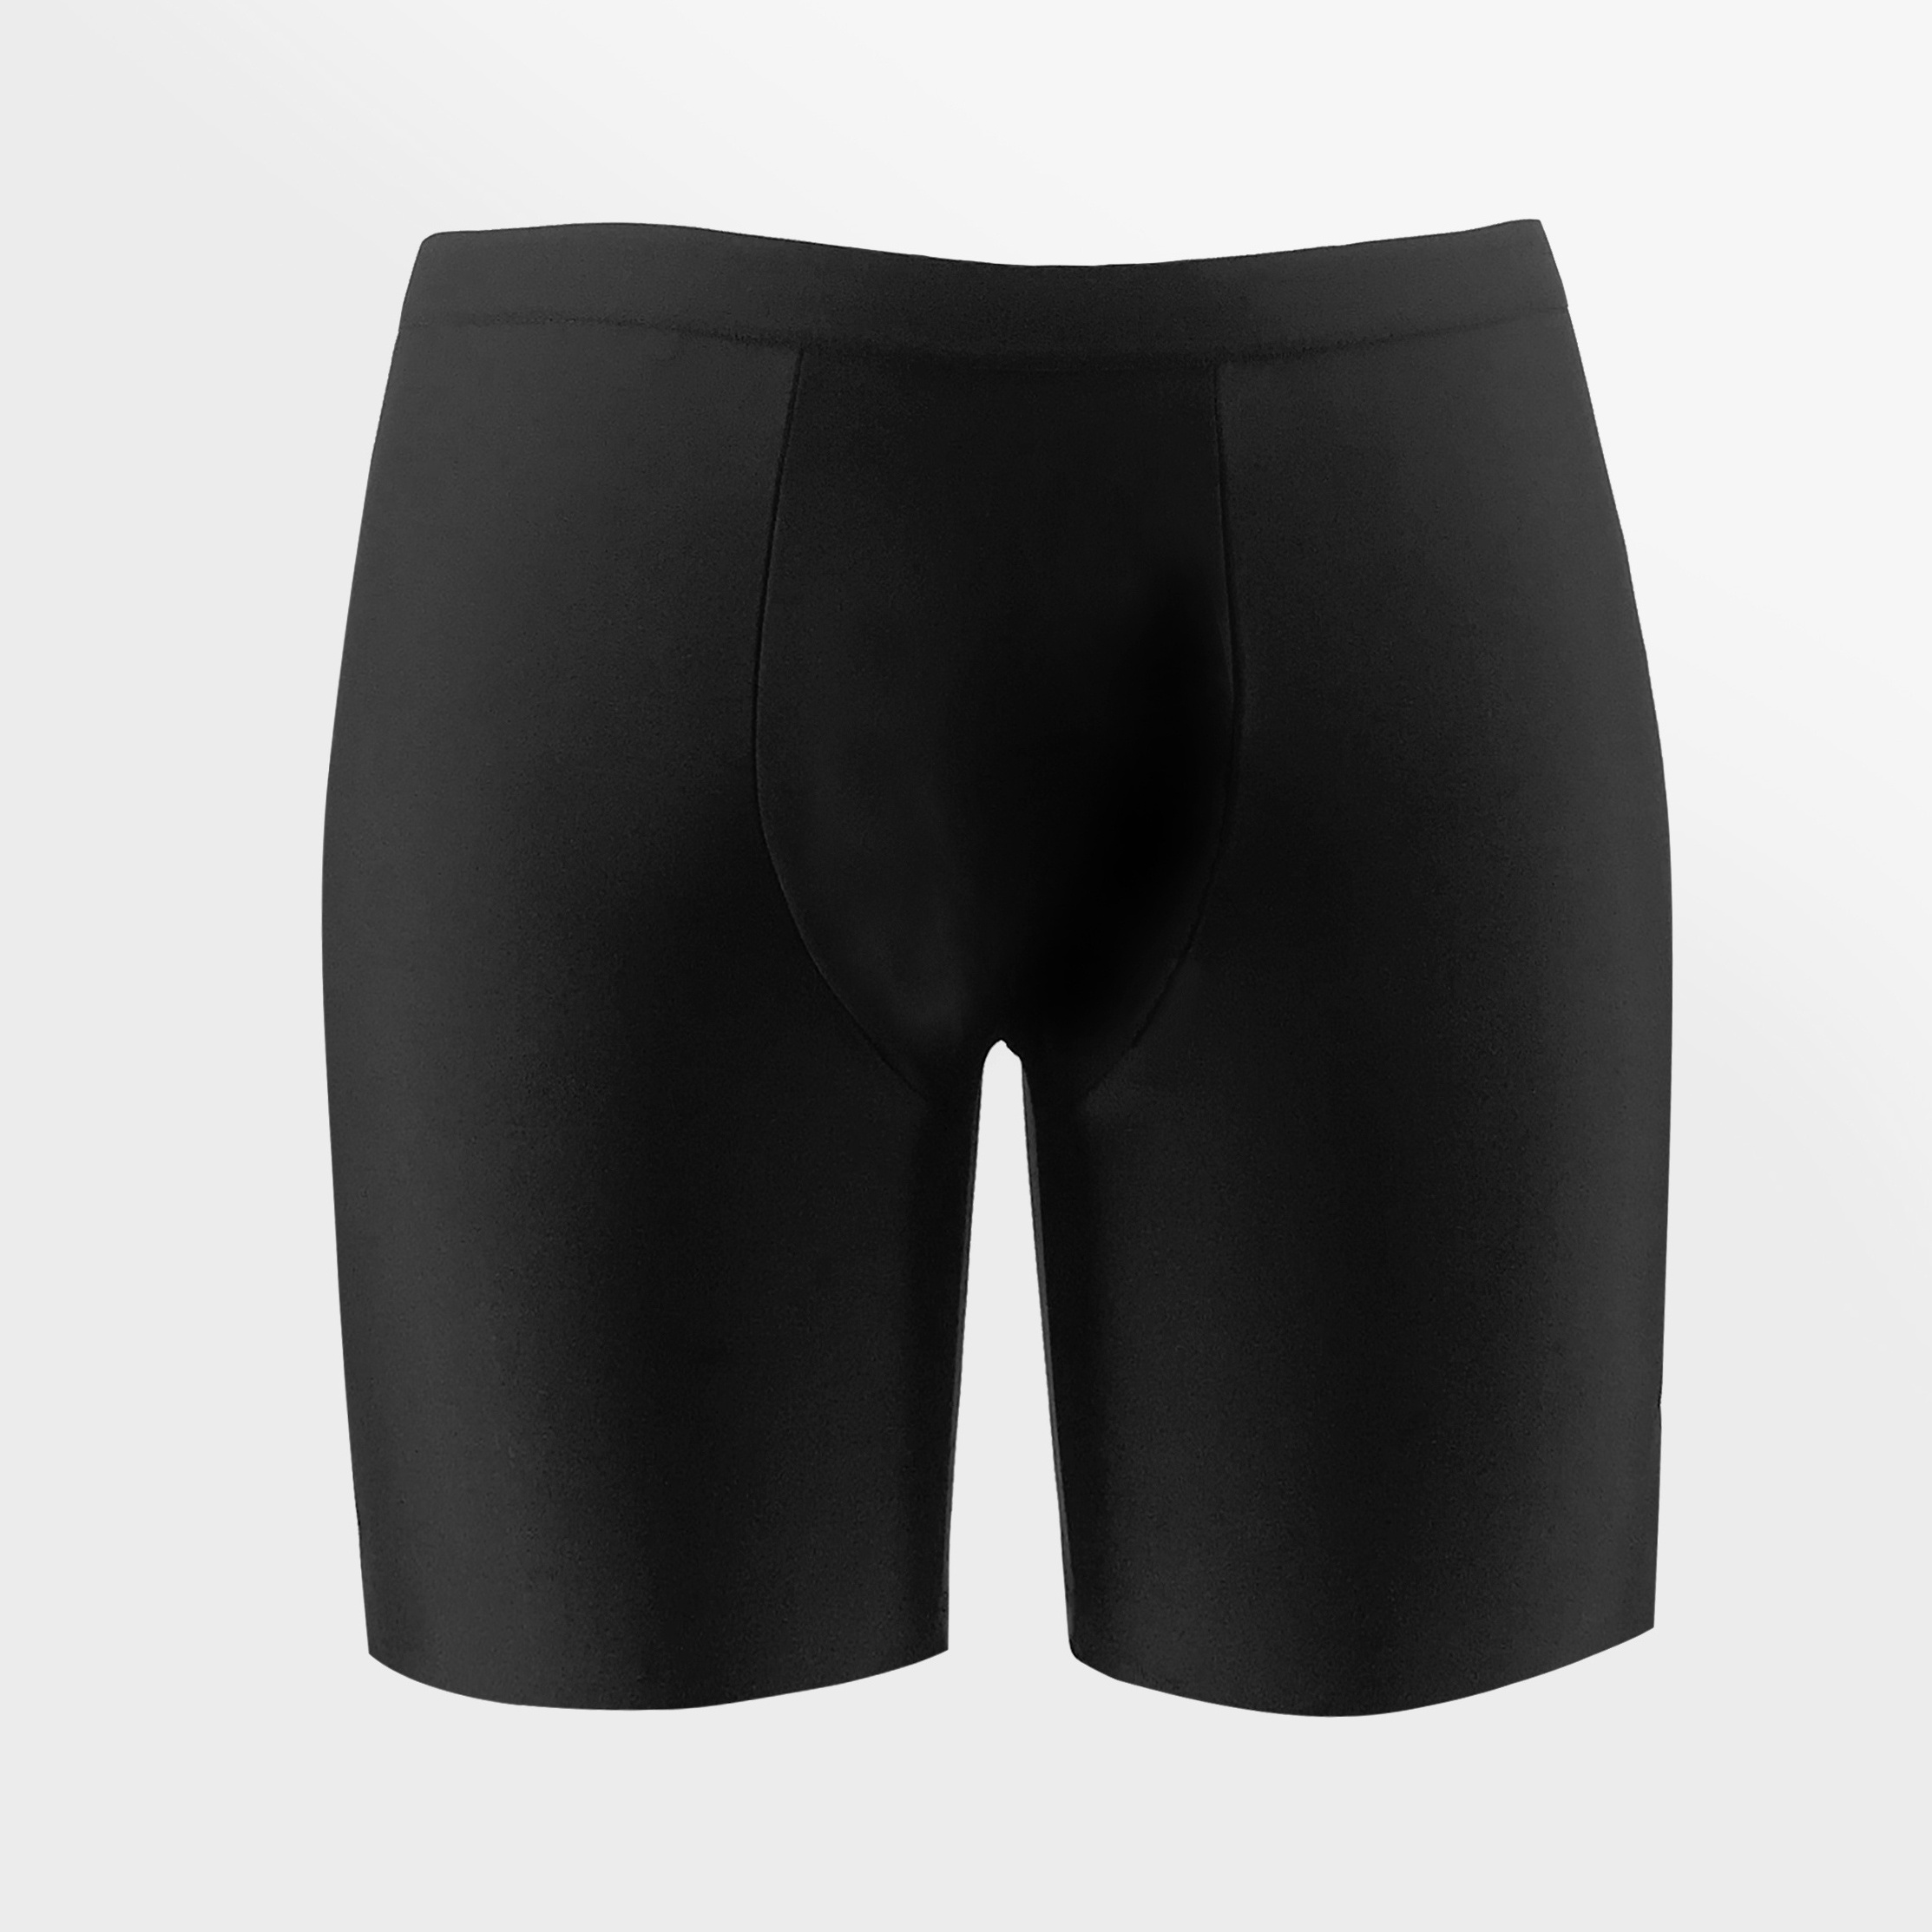 Uabrav Men's Football Compression Pants - Black Black / M